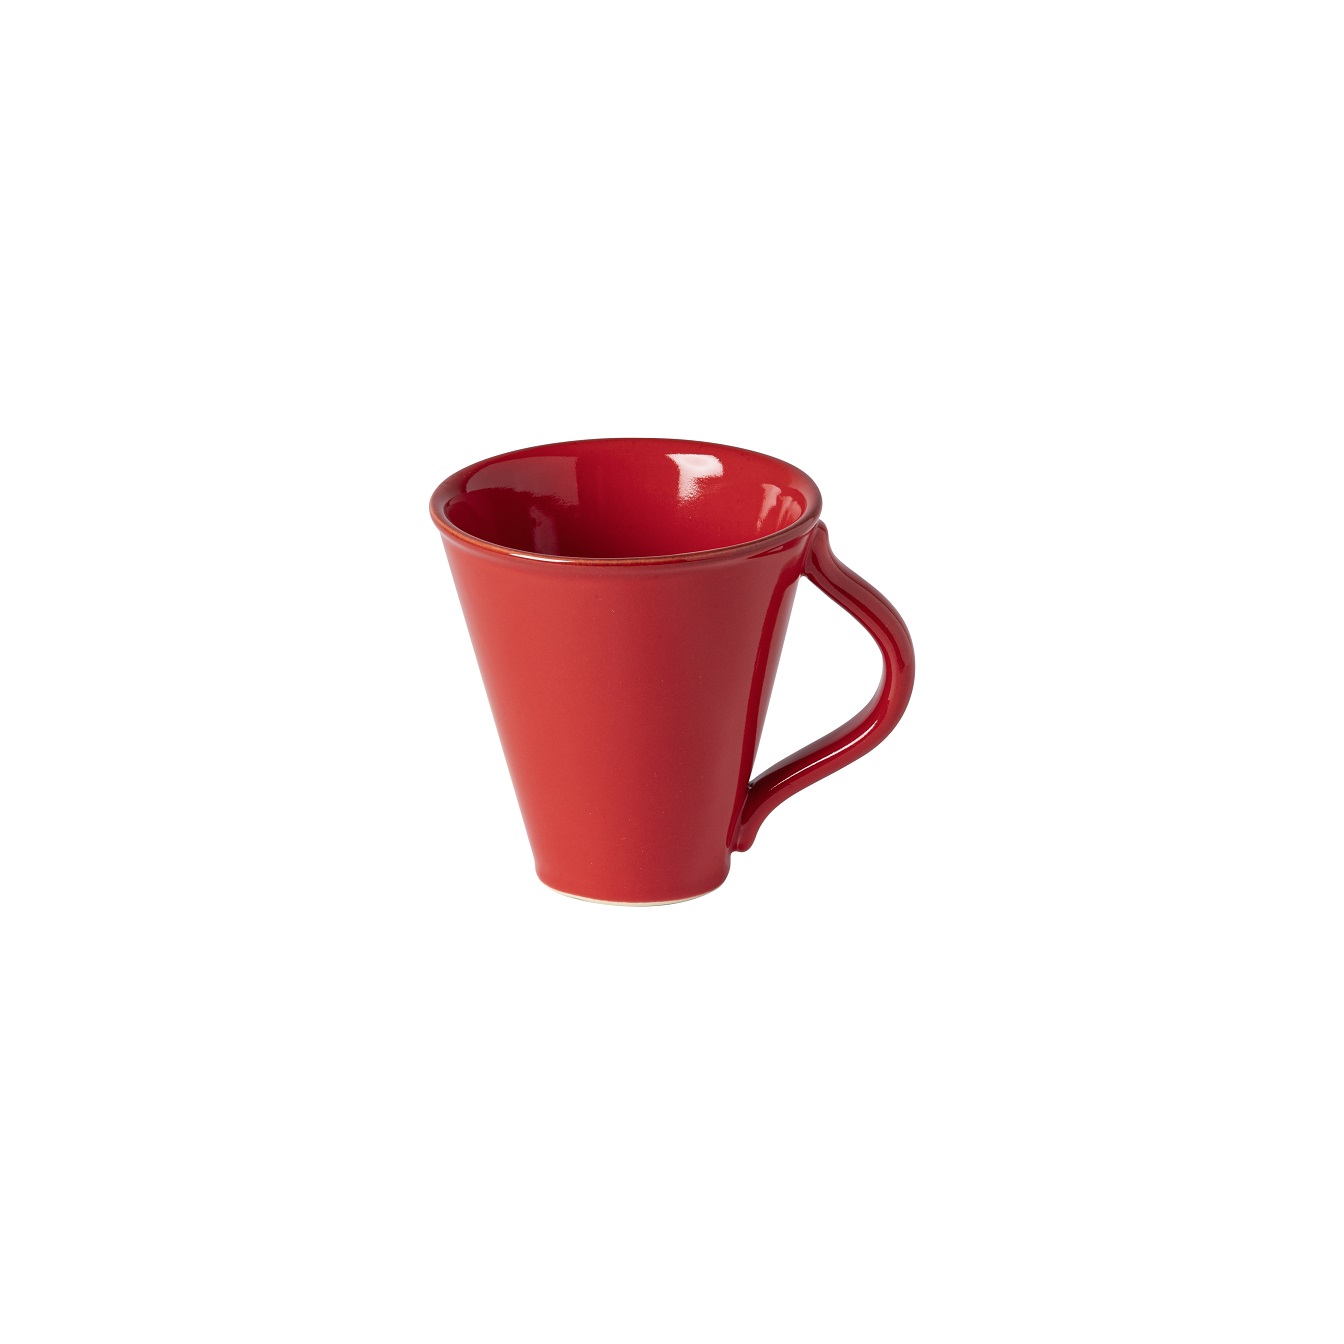 Cook & Host Red Mug 0.29l Gift